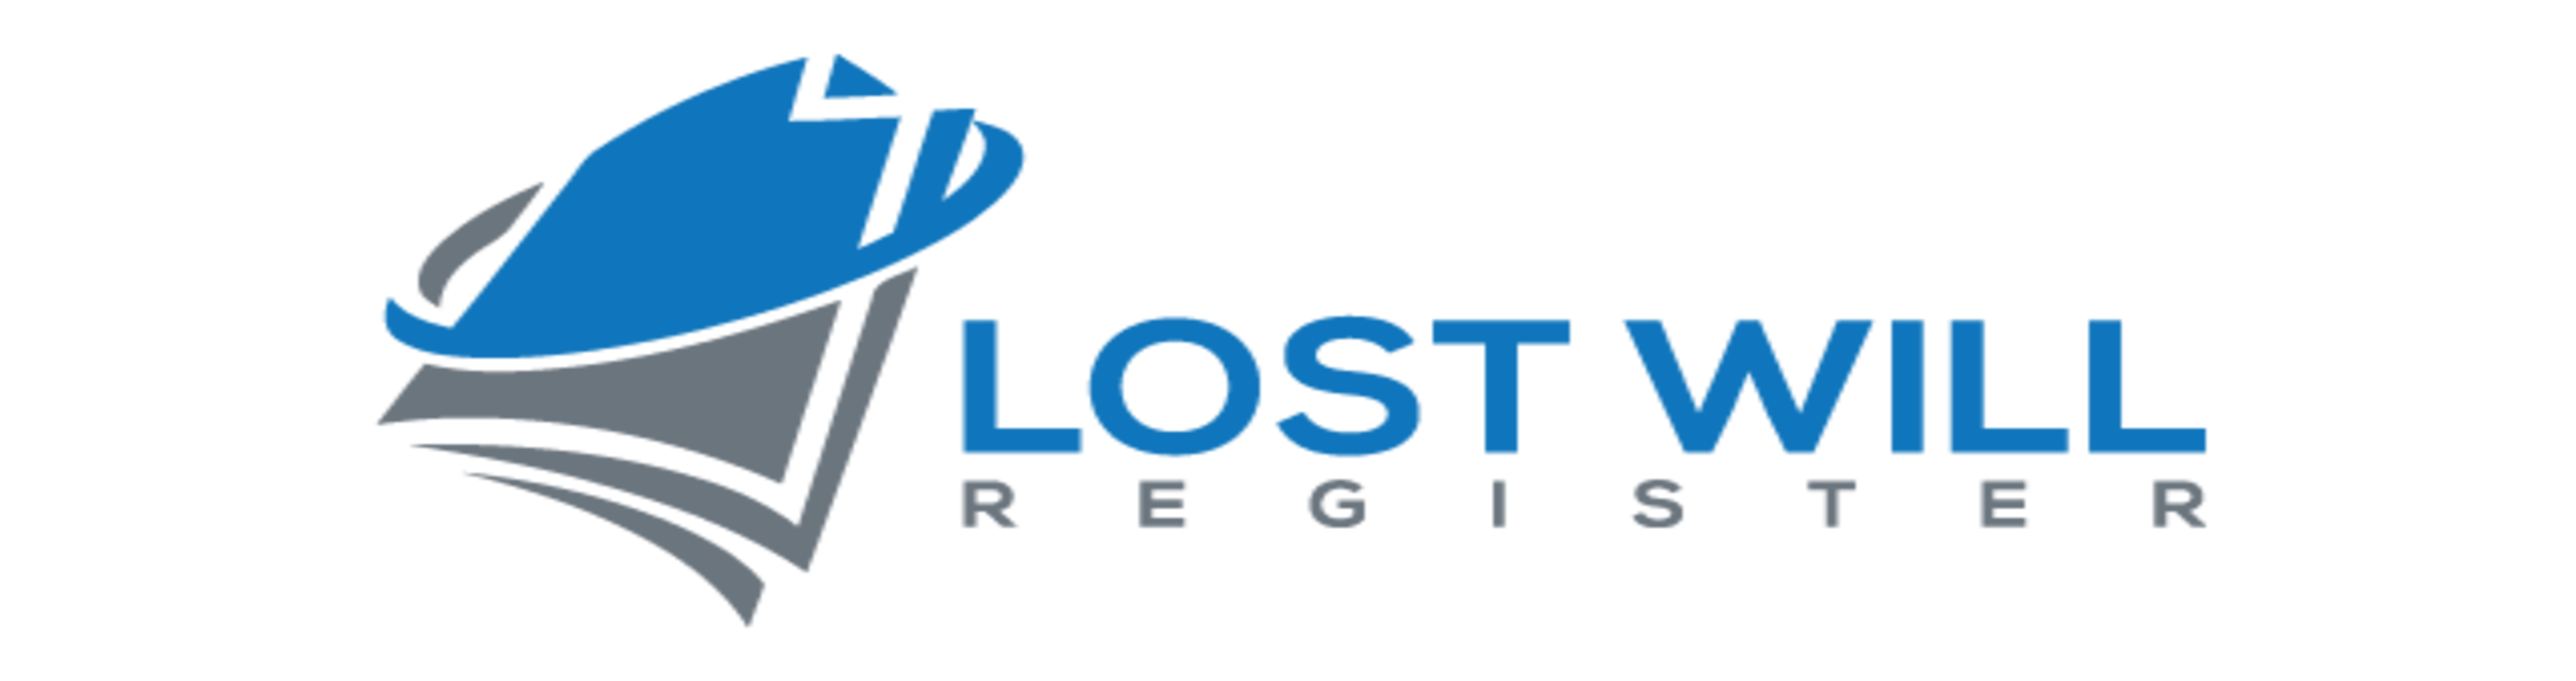 Australian Lost Will Register™ Logo